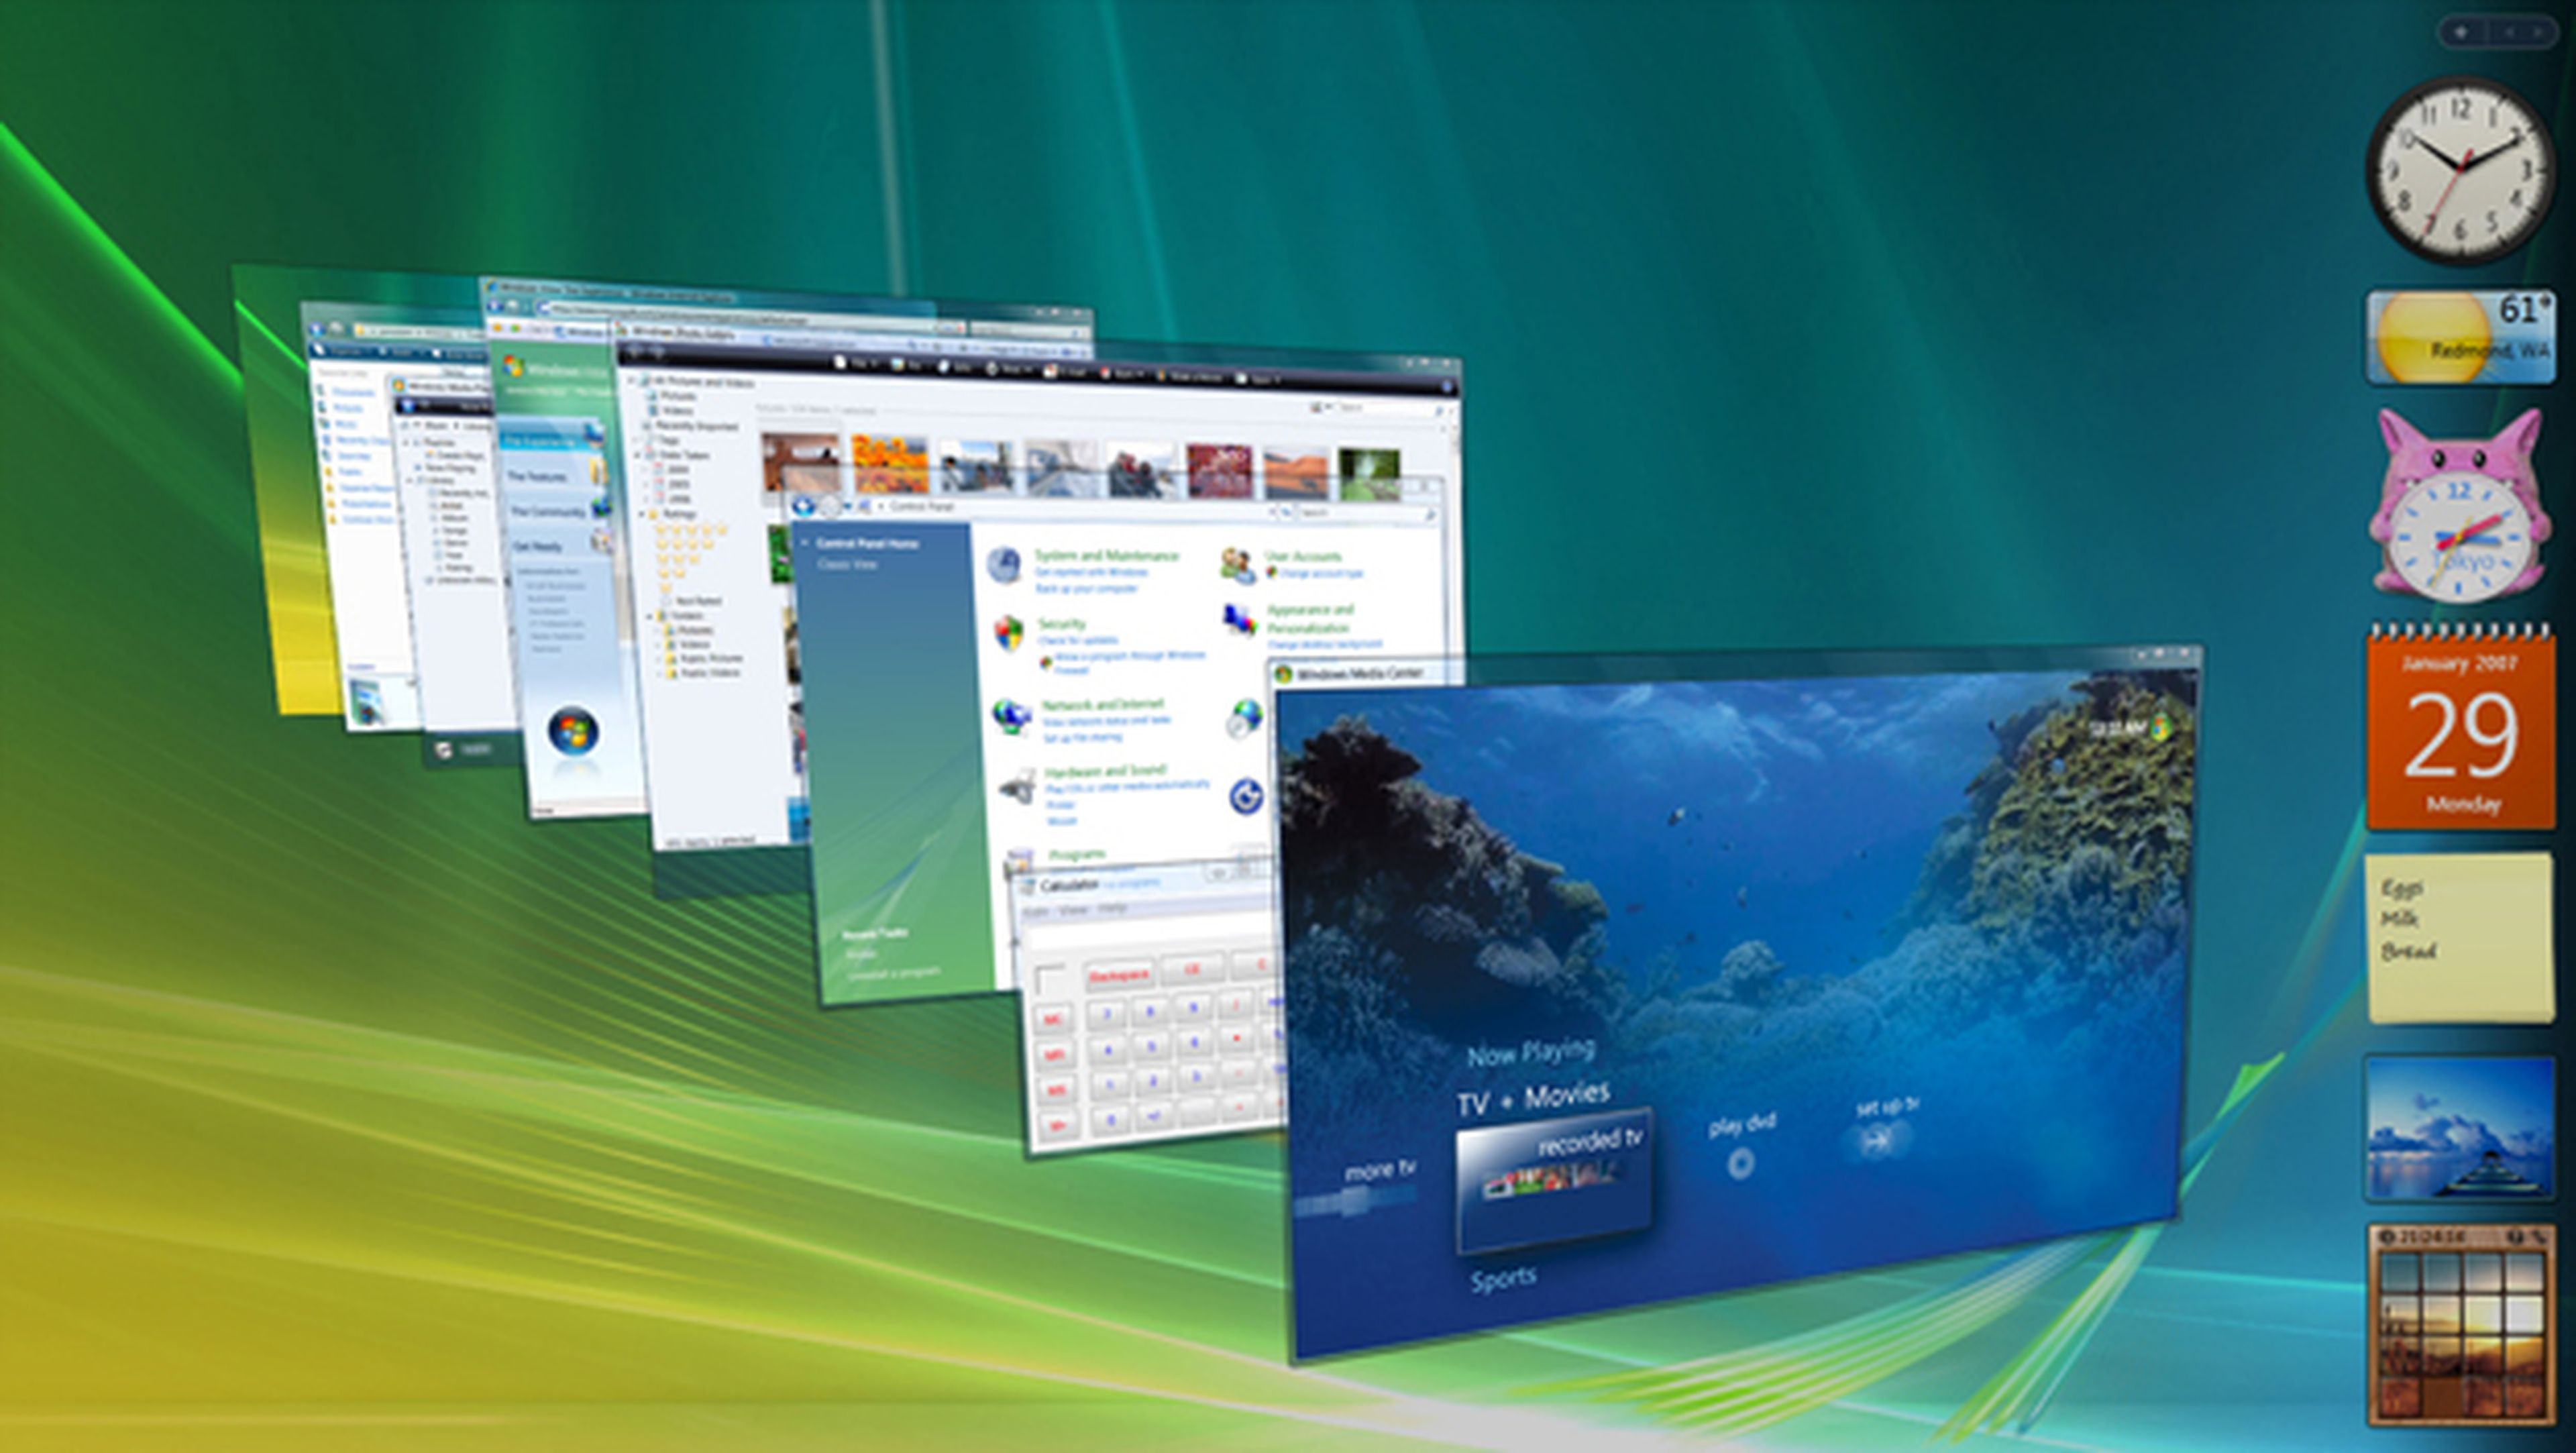 El soporte extendido de Windows Vista finalizará en 2017